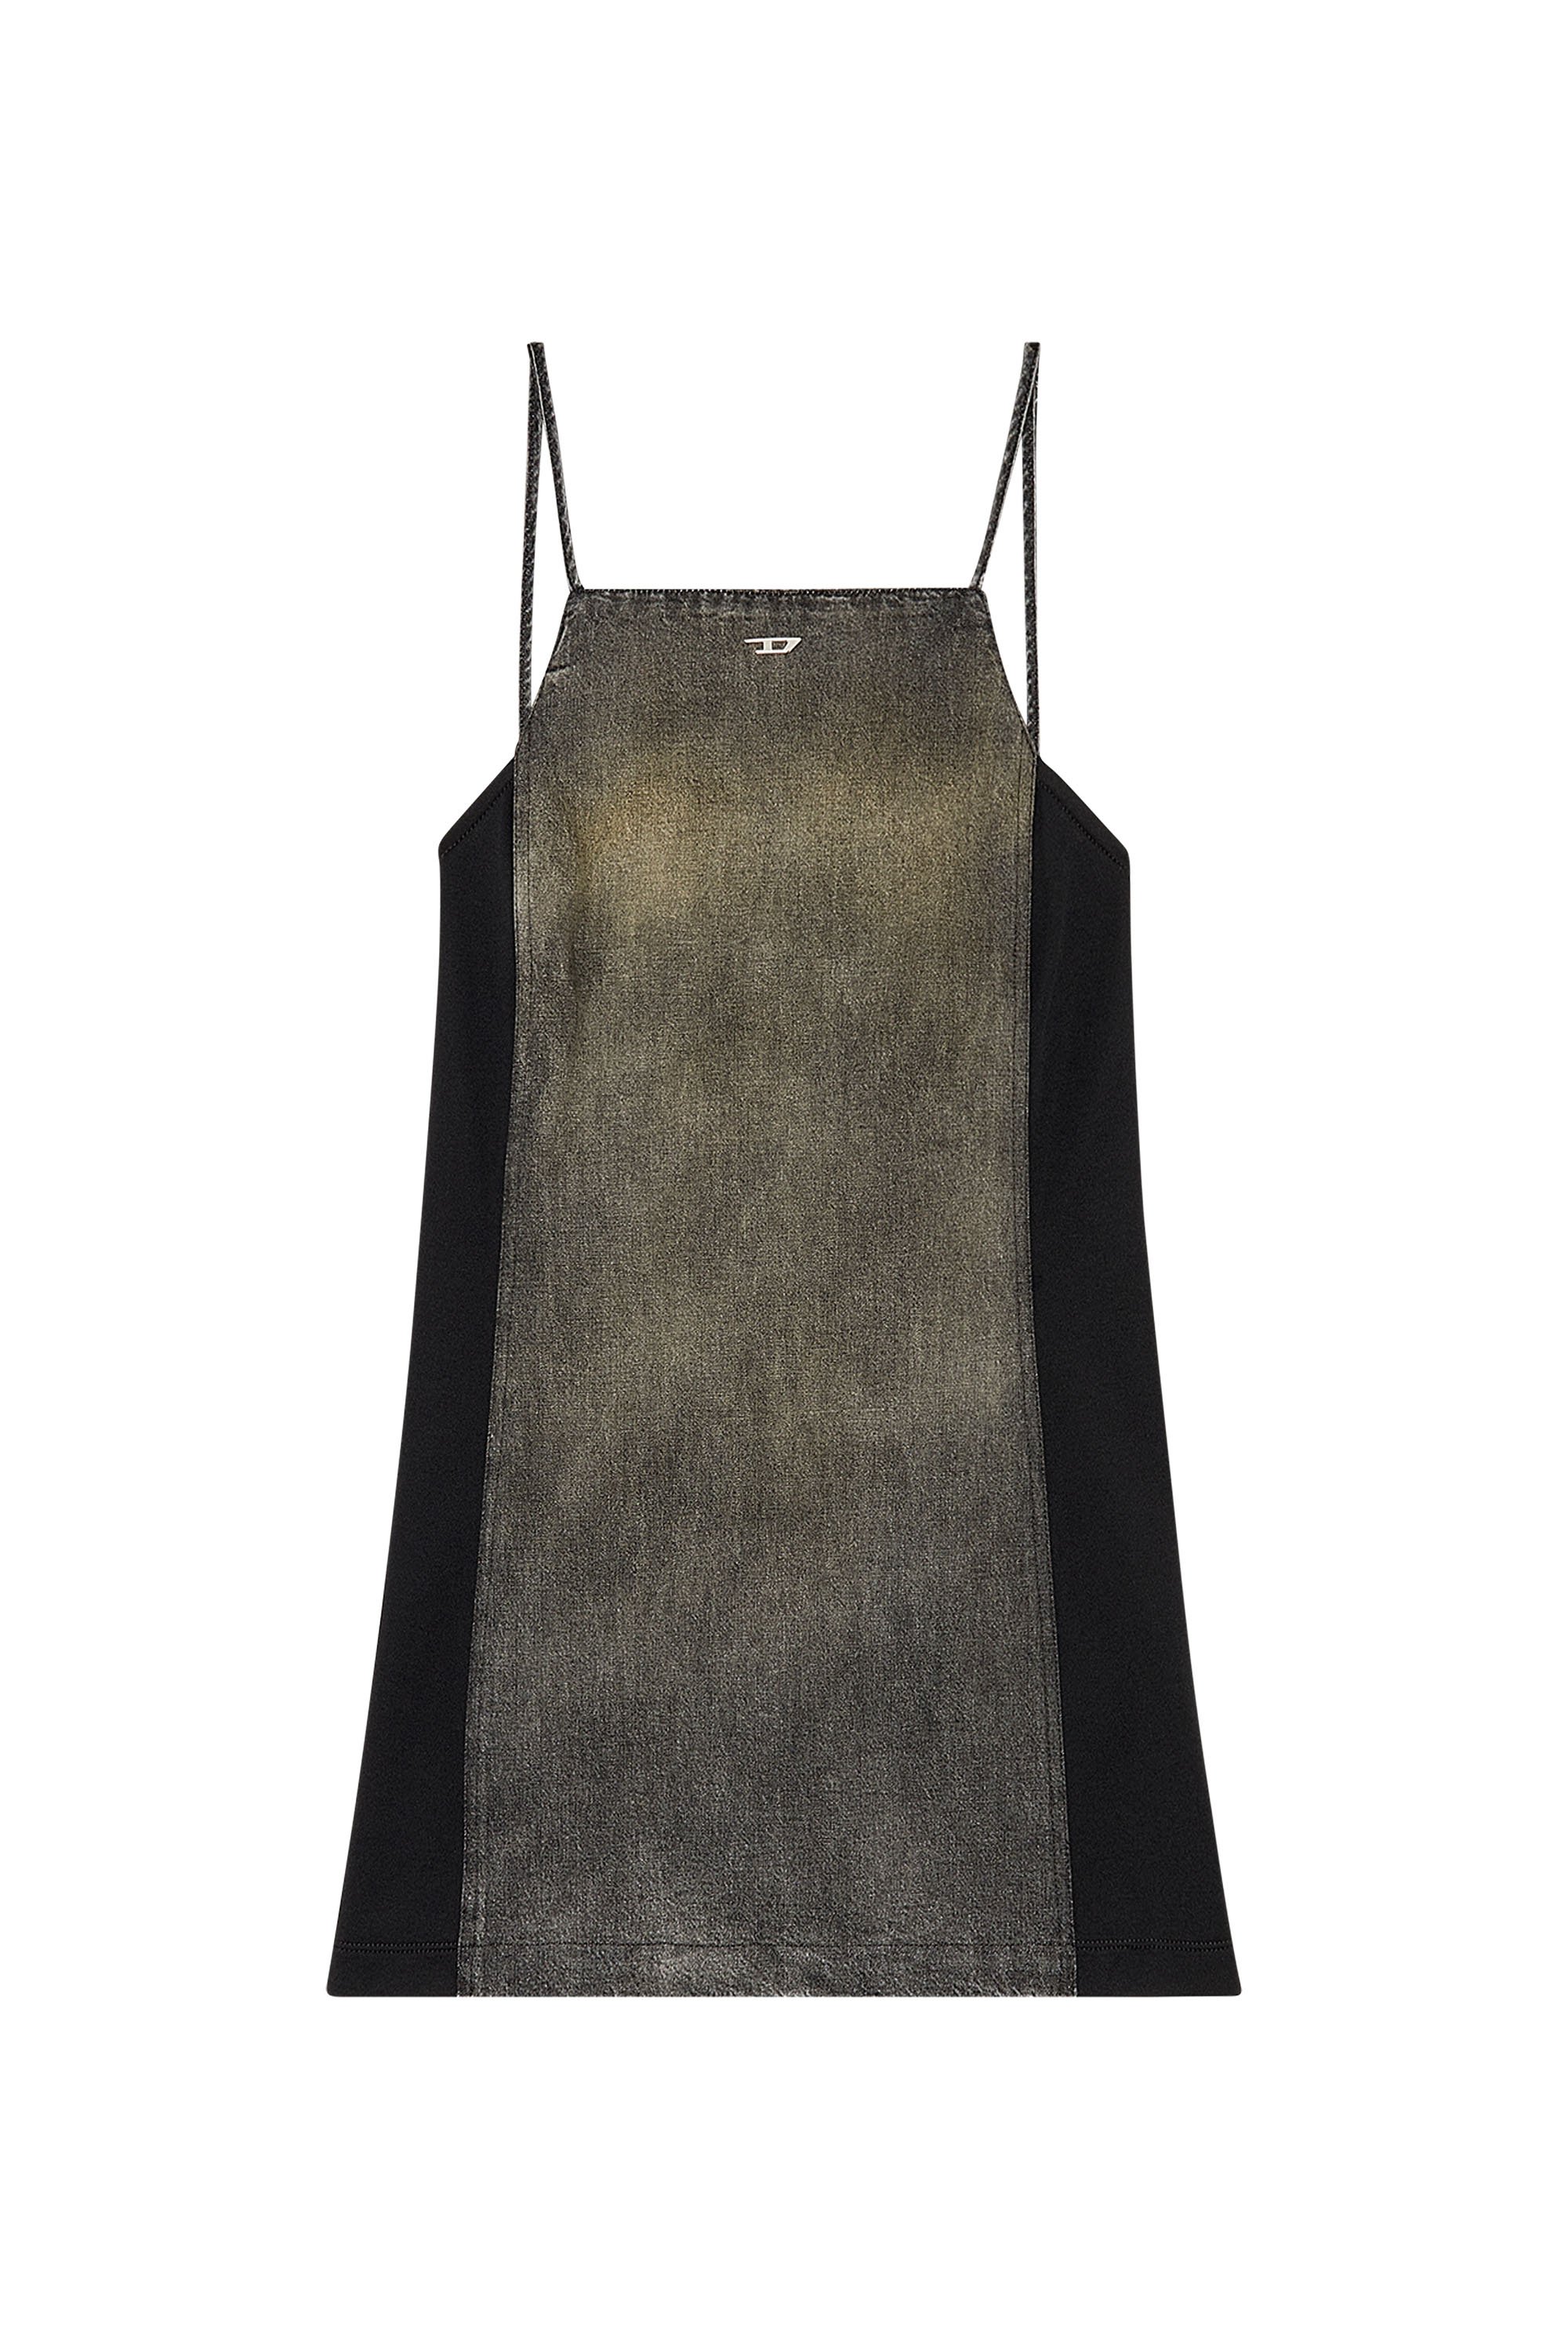 Diesel - DE-BETY-DRESS-S, Woman Denim dress in cotton and hemp in Black - Image 4